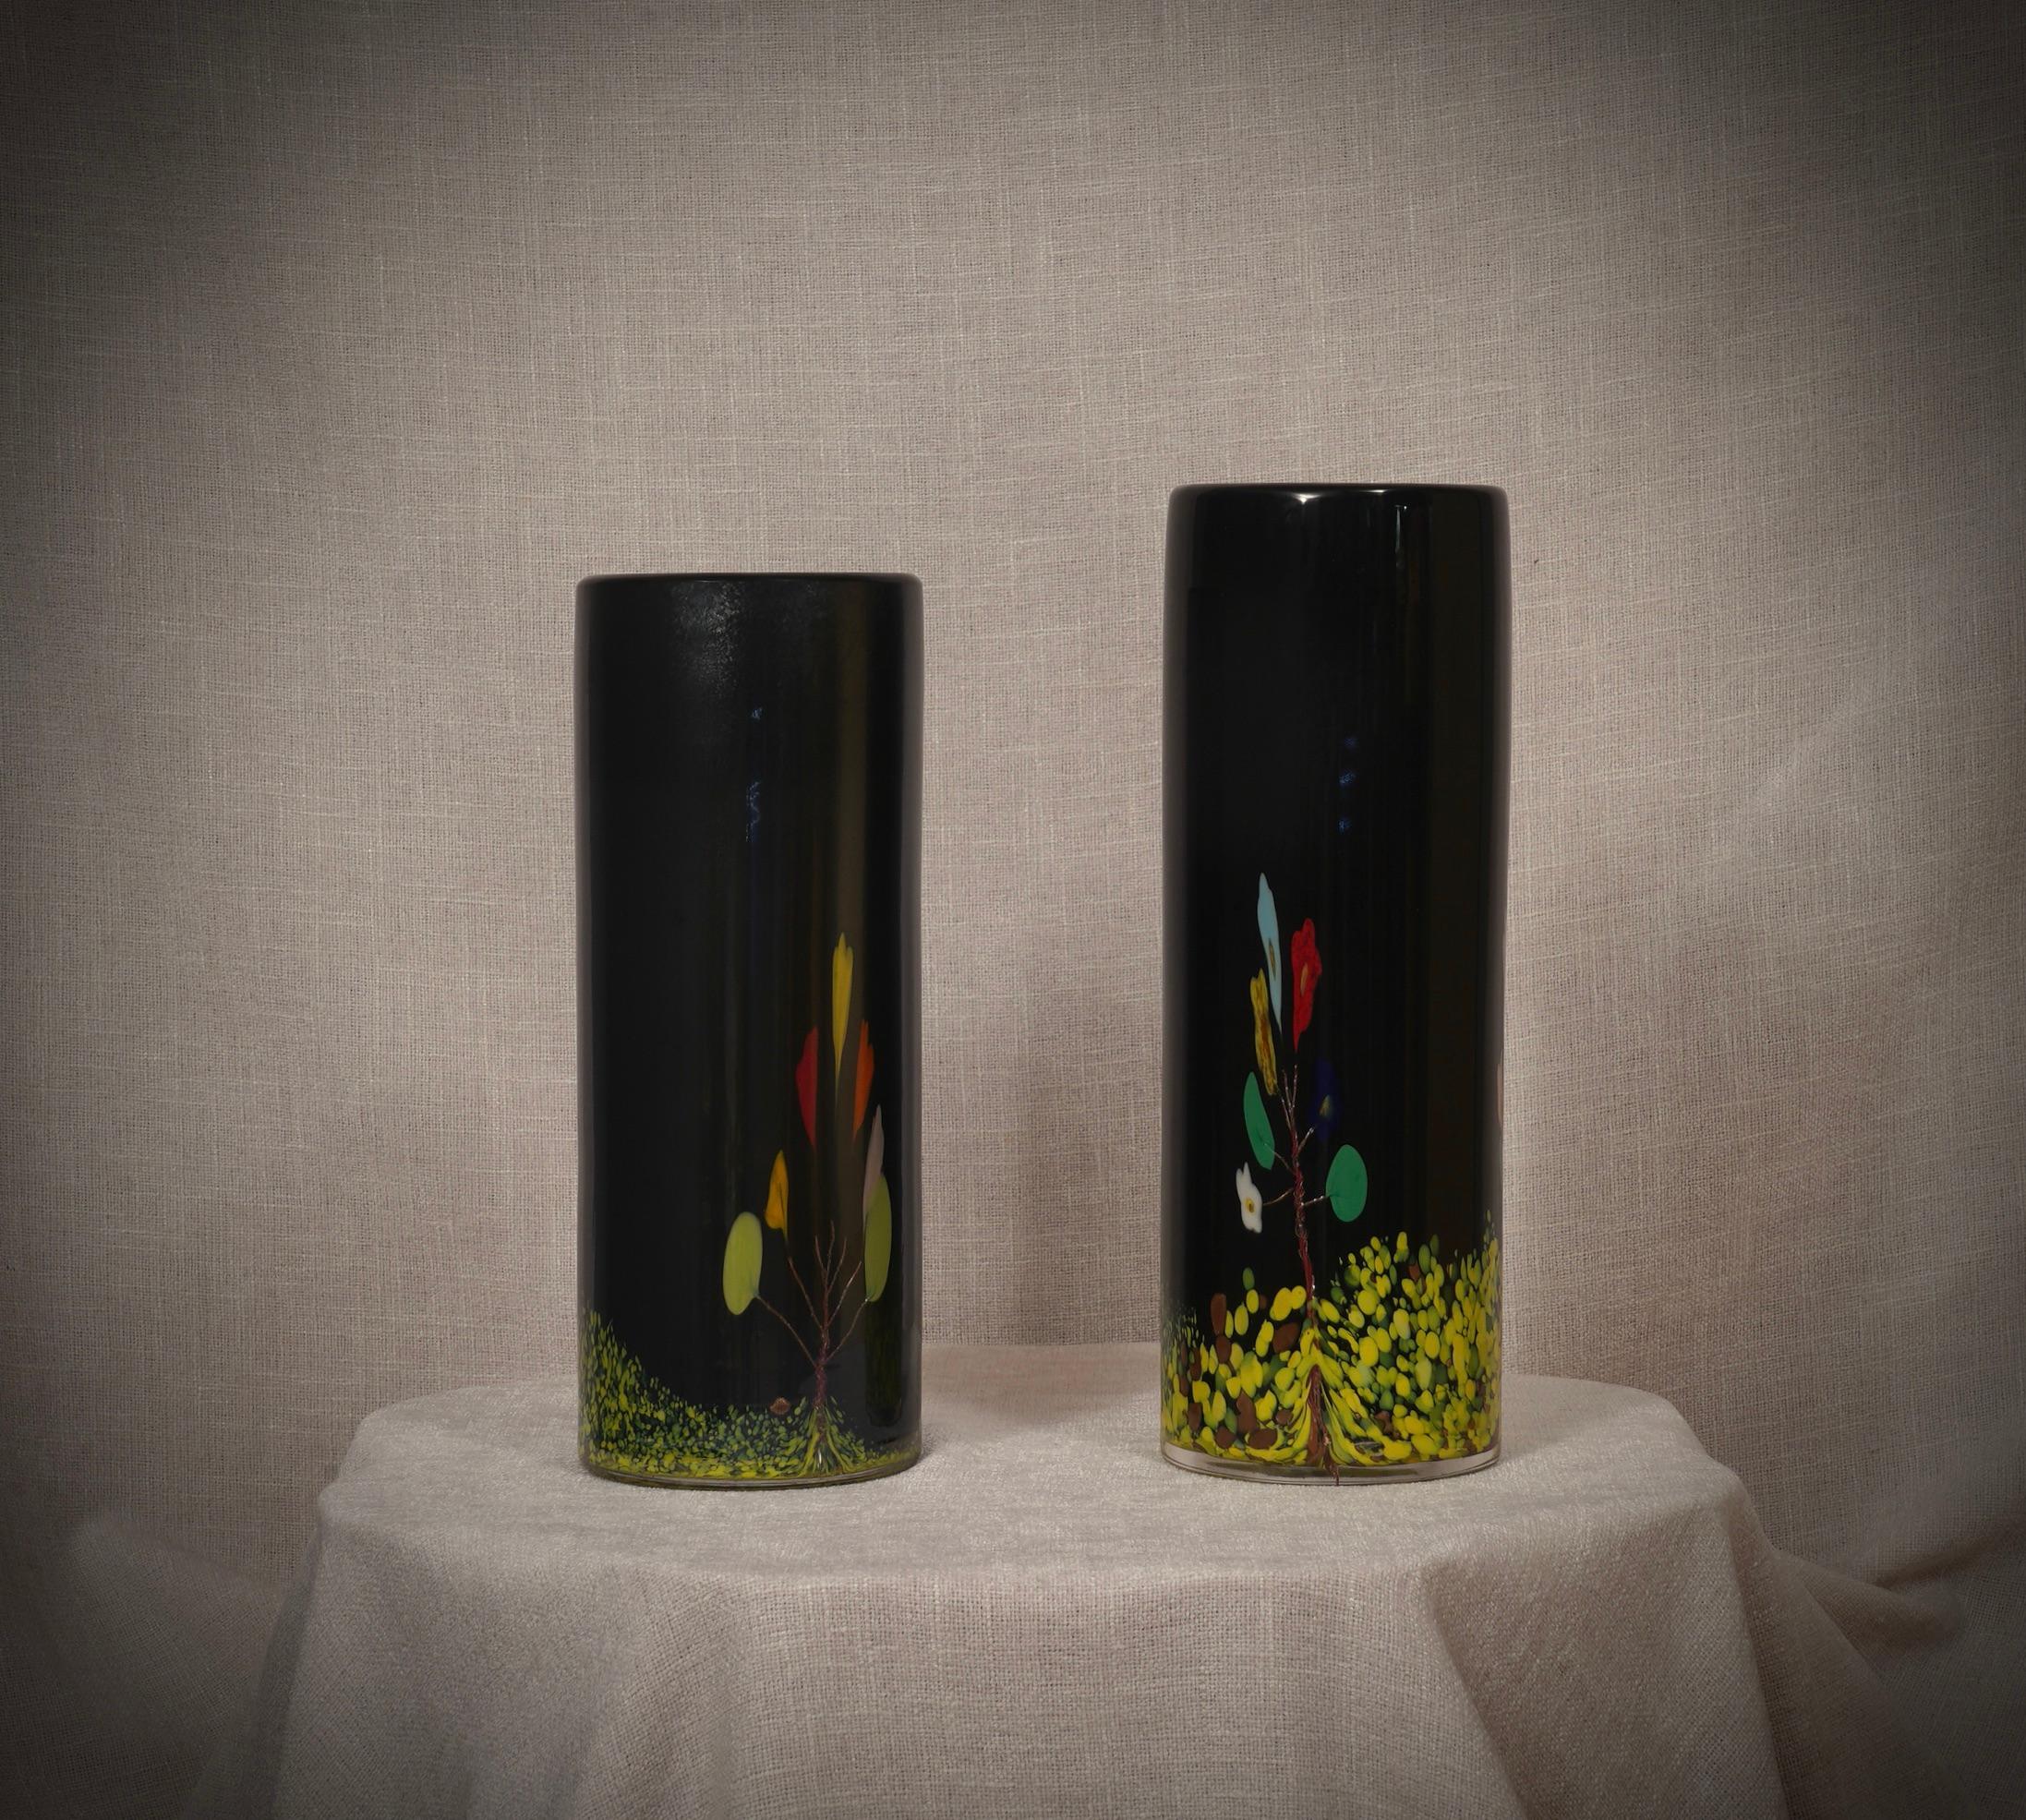 Fantastico vaso della vetreria di Murano, sia per la sua particolare lavorazione che per il colore, infatti il vaso è nero ma presenta altri colori all'interno a formare un disegno di un albero con fiori. I forni di Murano creano un indiscutibile